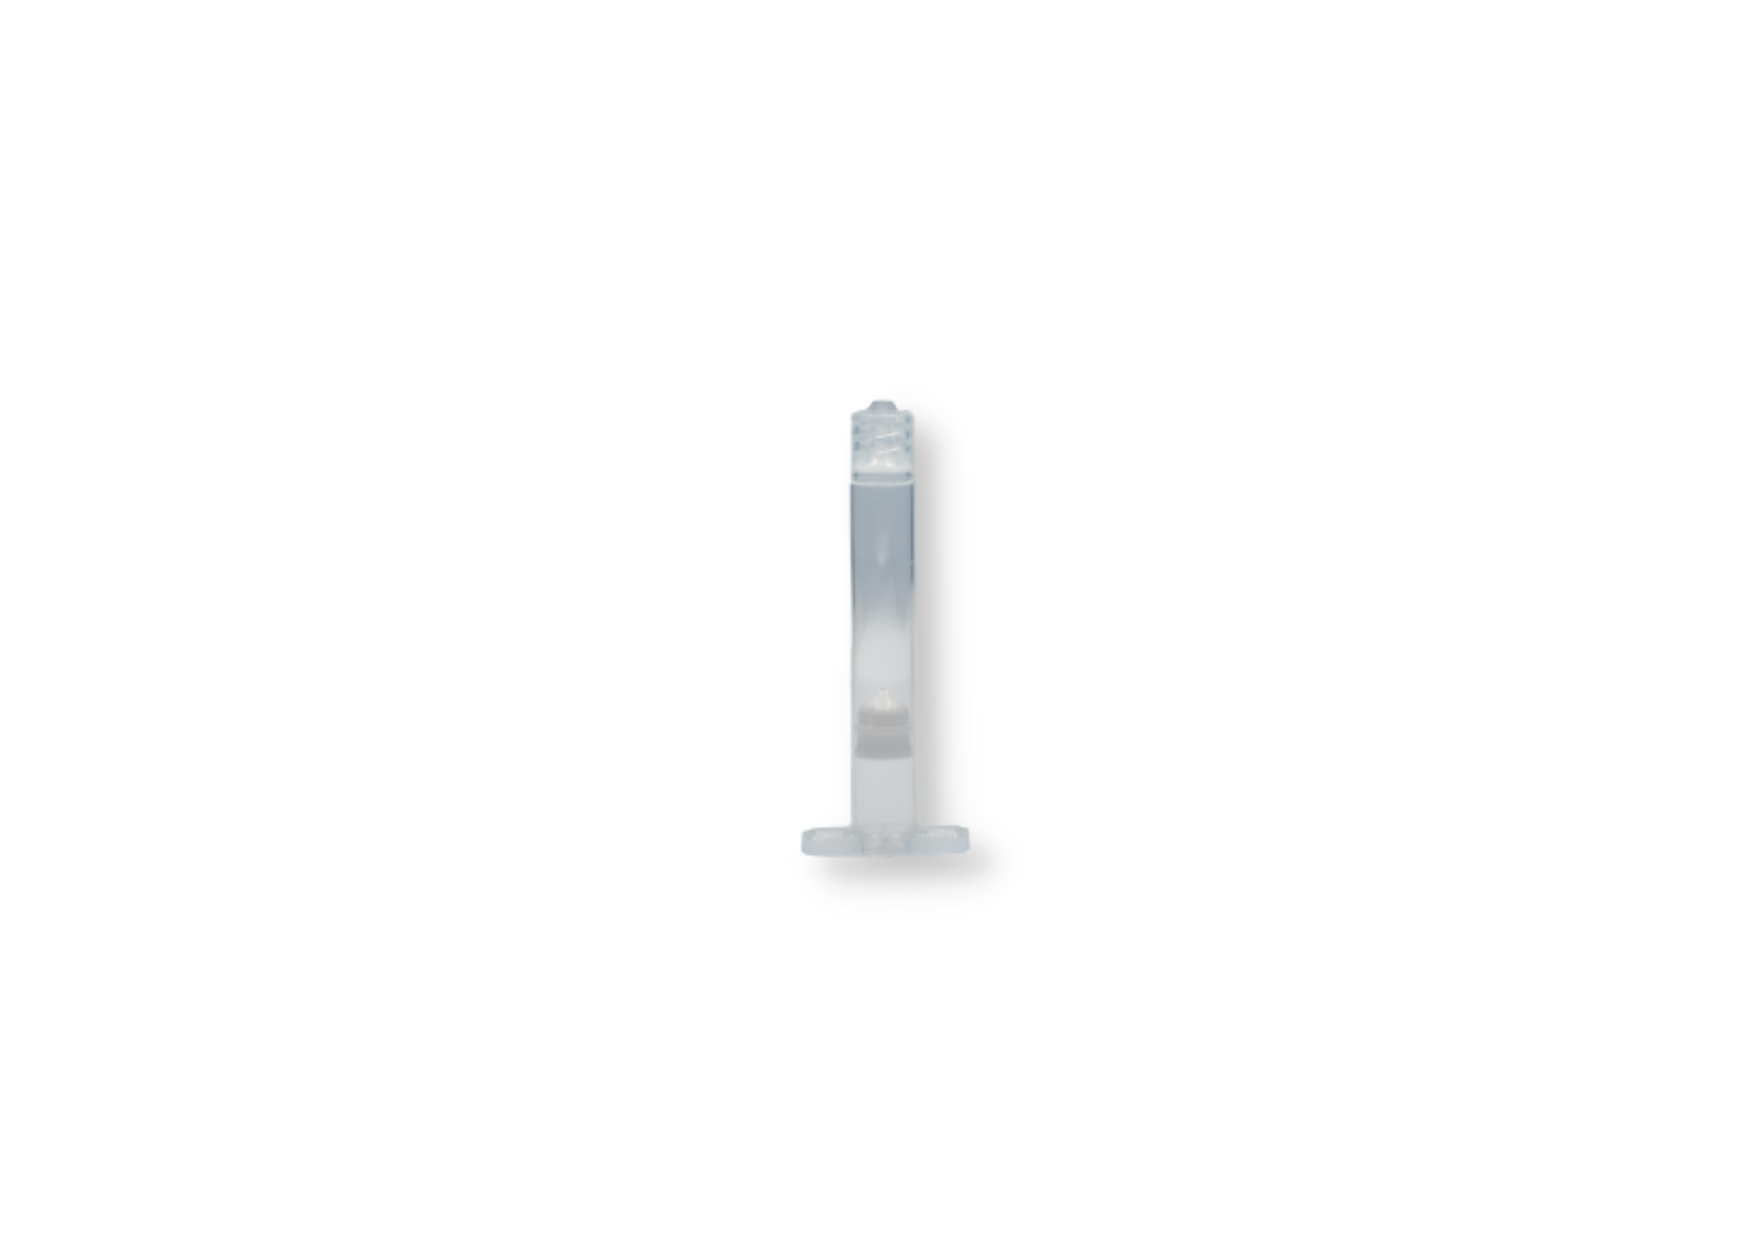 10 cc transparent polyethylene and polypropylene syringe, piston included (30 U)